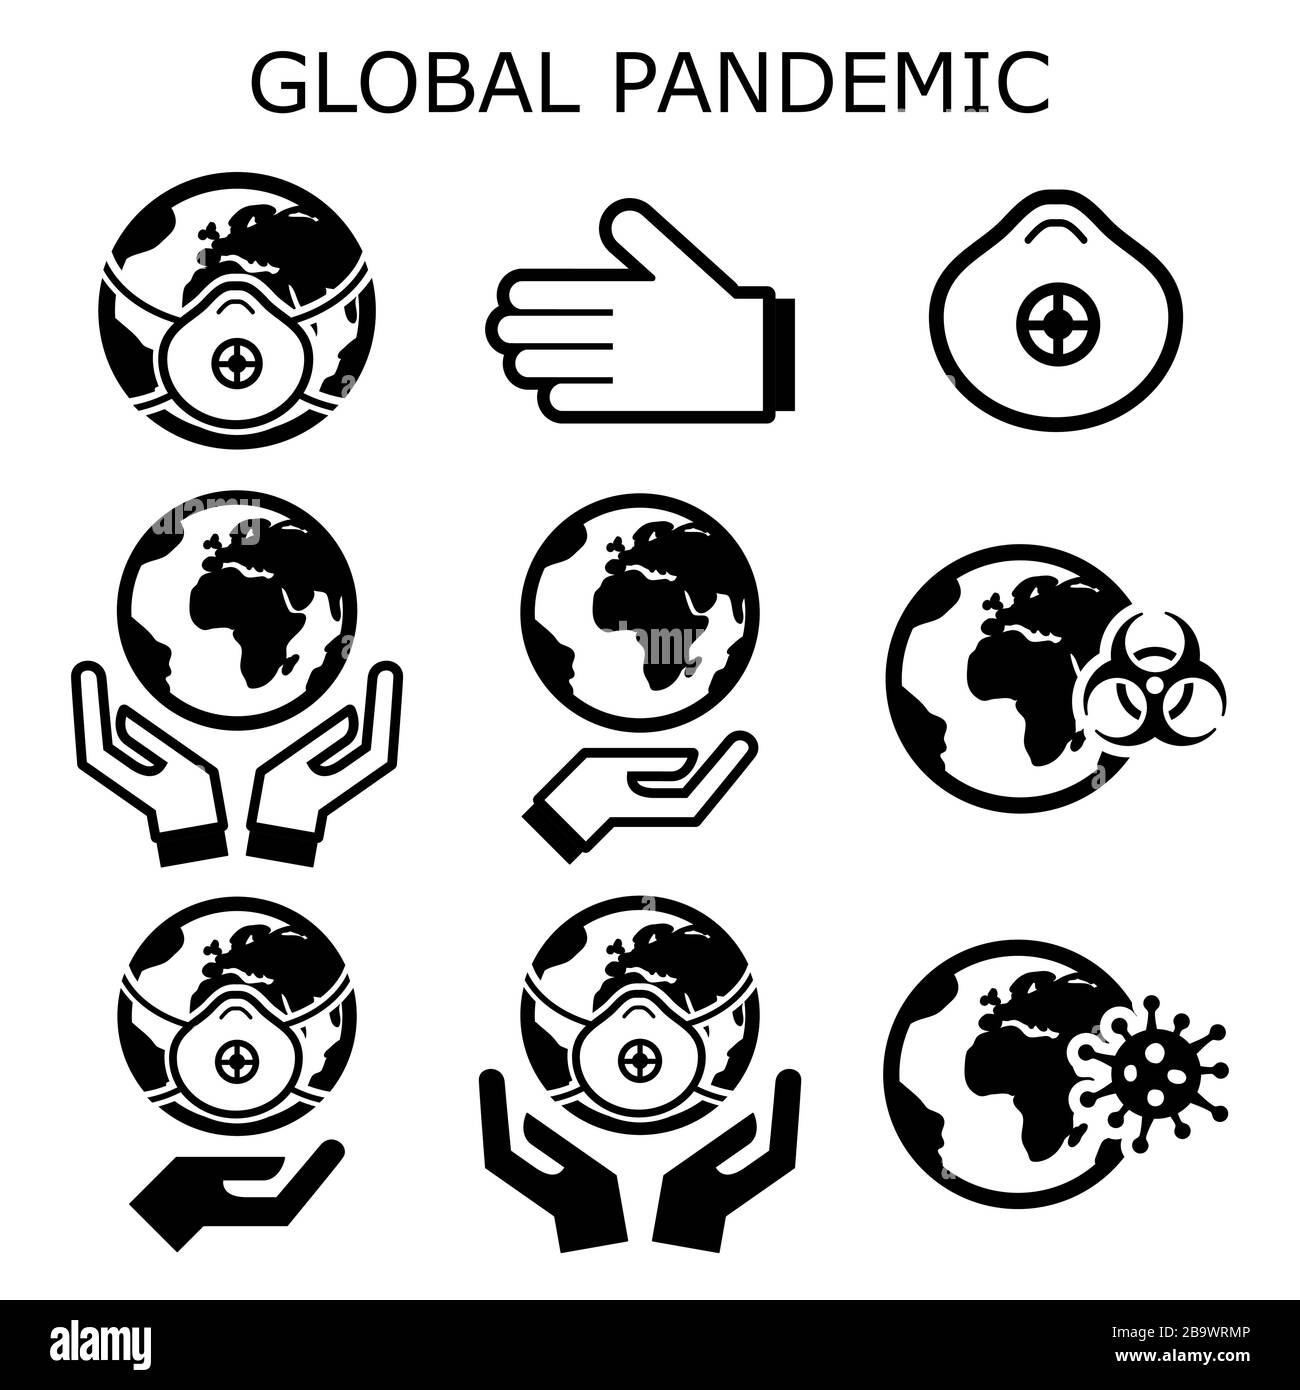 Des icônes vectorielles pandémiques mondiales s'affichent, protégeant le monde de la propagation d'un virus, du monde dans le concept de danger épidémique Illustration de Vecteur